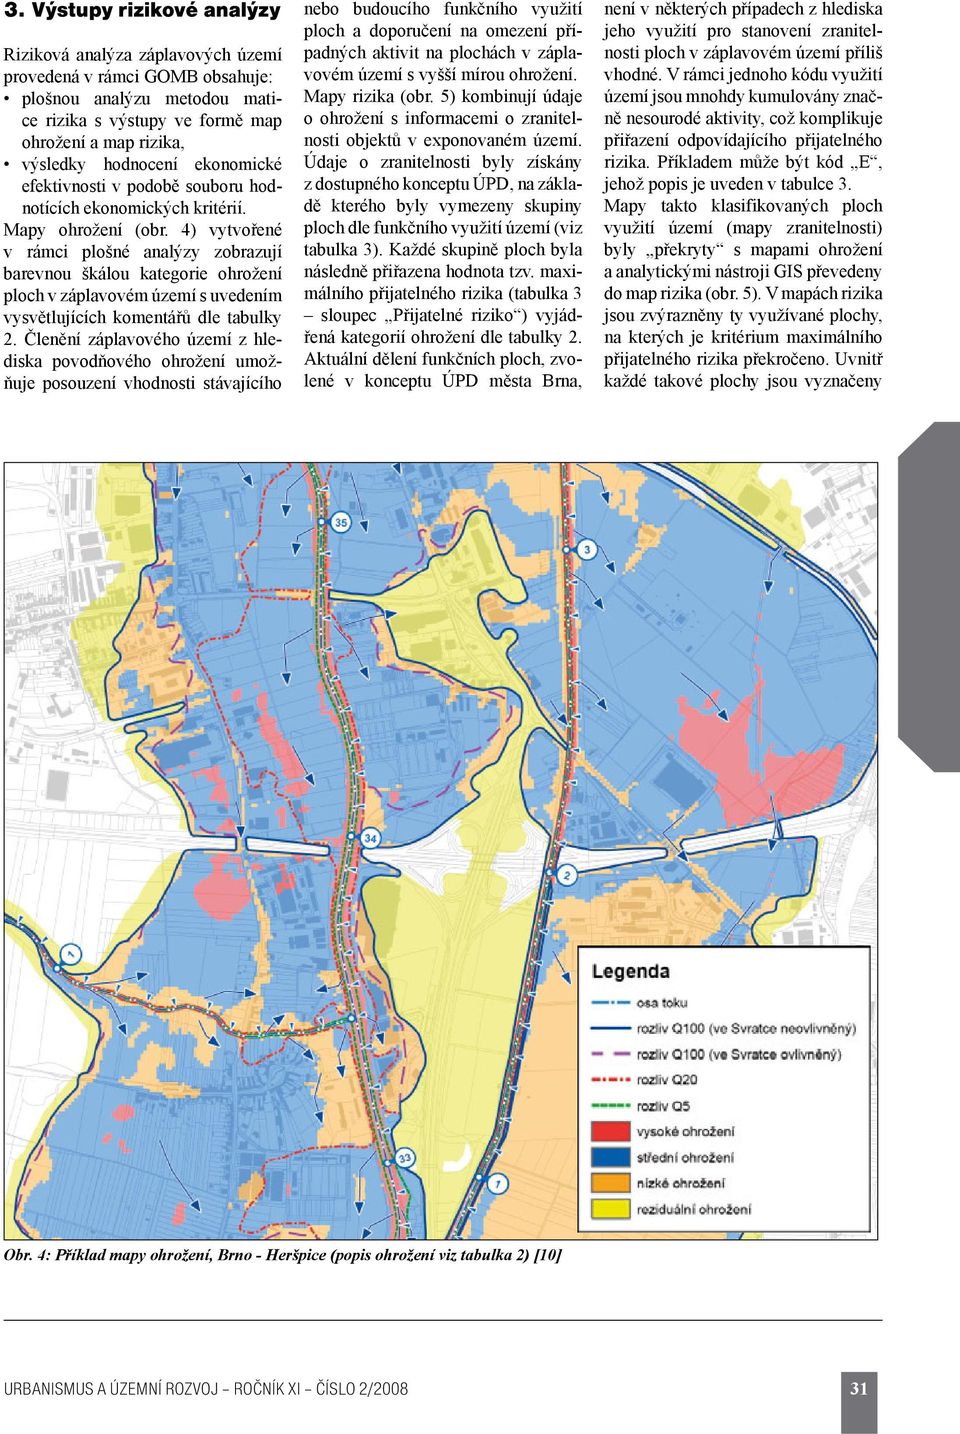 4) vytvořené v rámci plošné analýzy zobrazují barevnou škálou kategorie ohrožení ploch v záplavovém území s uvedením vysvětlujících komentářů dle tabulky 2.